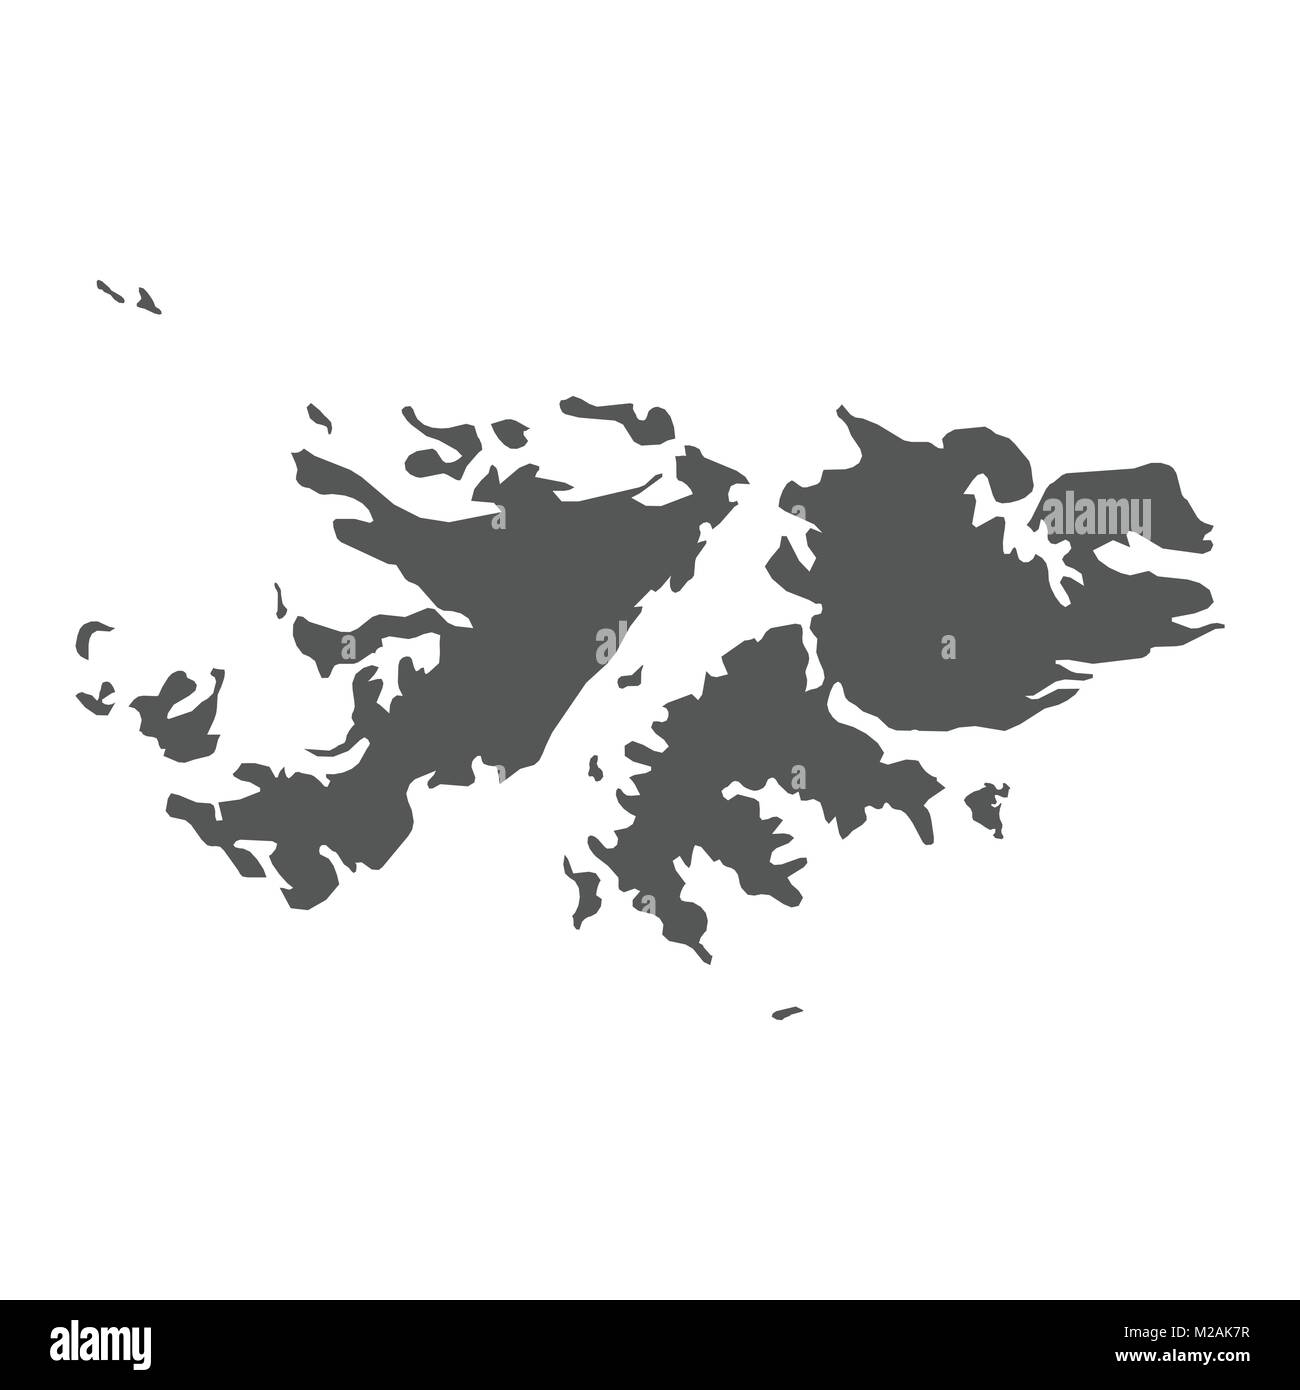 Falklandinseln Vektorkarte. Schwarzes Symbol auf weißem Hintergrund. Stock Vektor